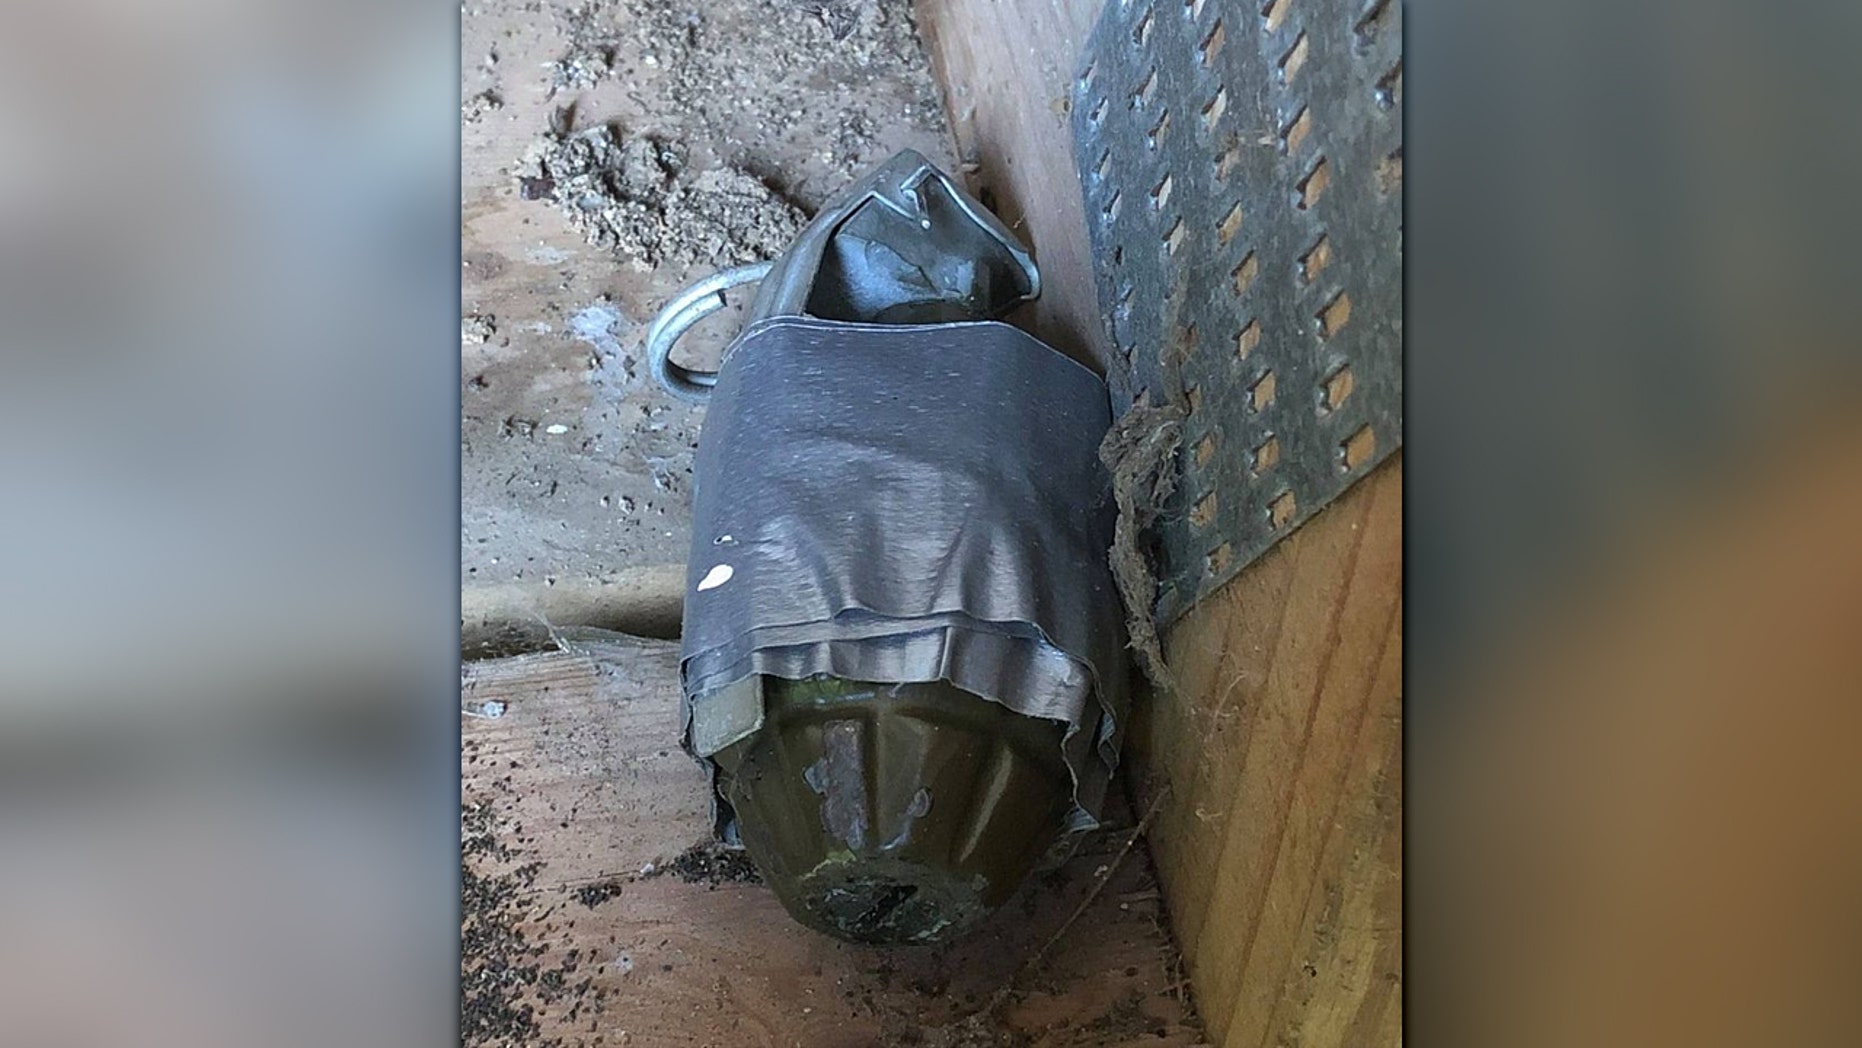 “Zbulimi tjetër shpërthyes”: Edhe një granatë e gjetur në një nga shtëpitë në Ohajo